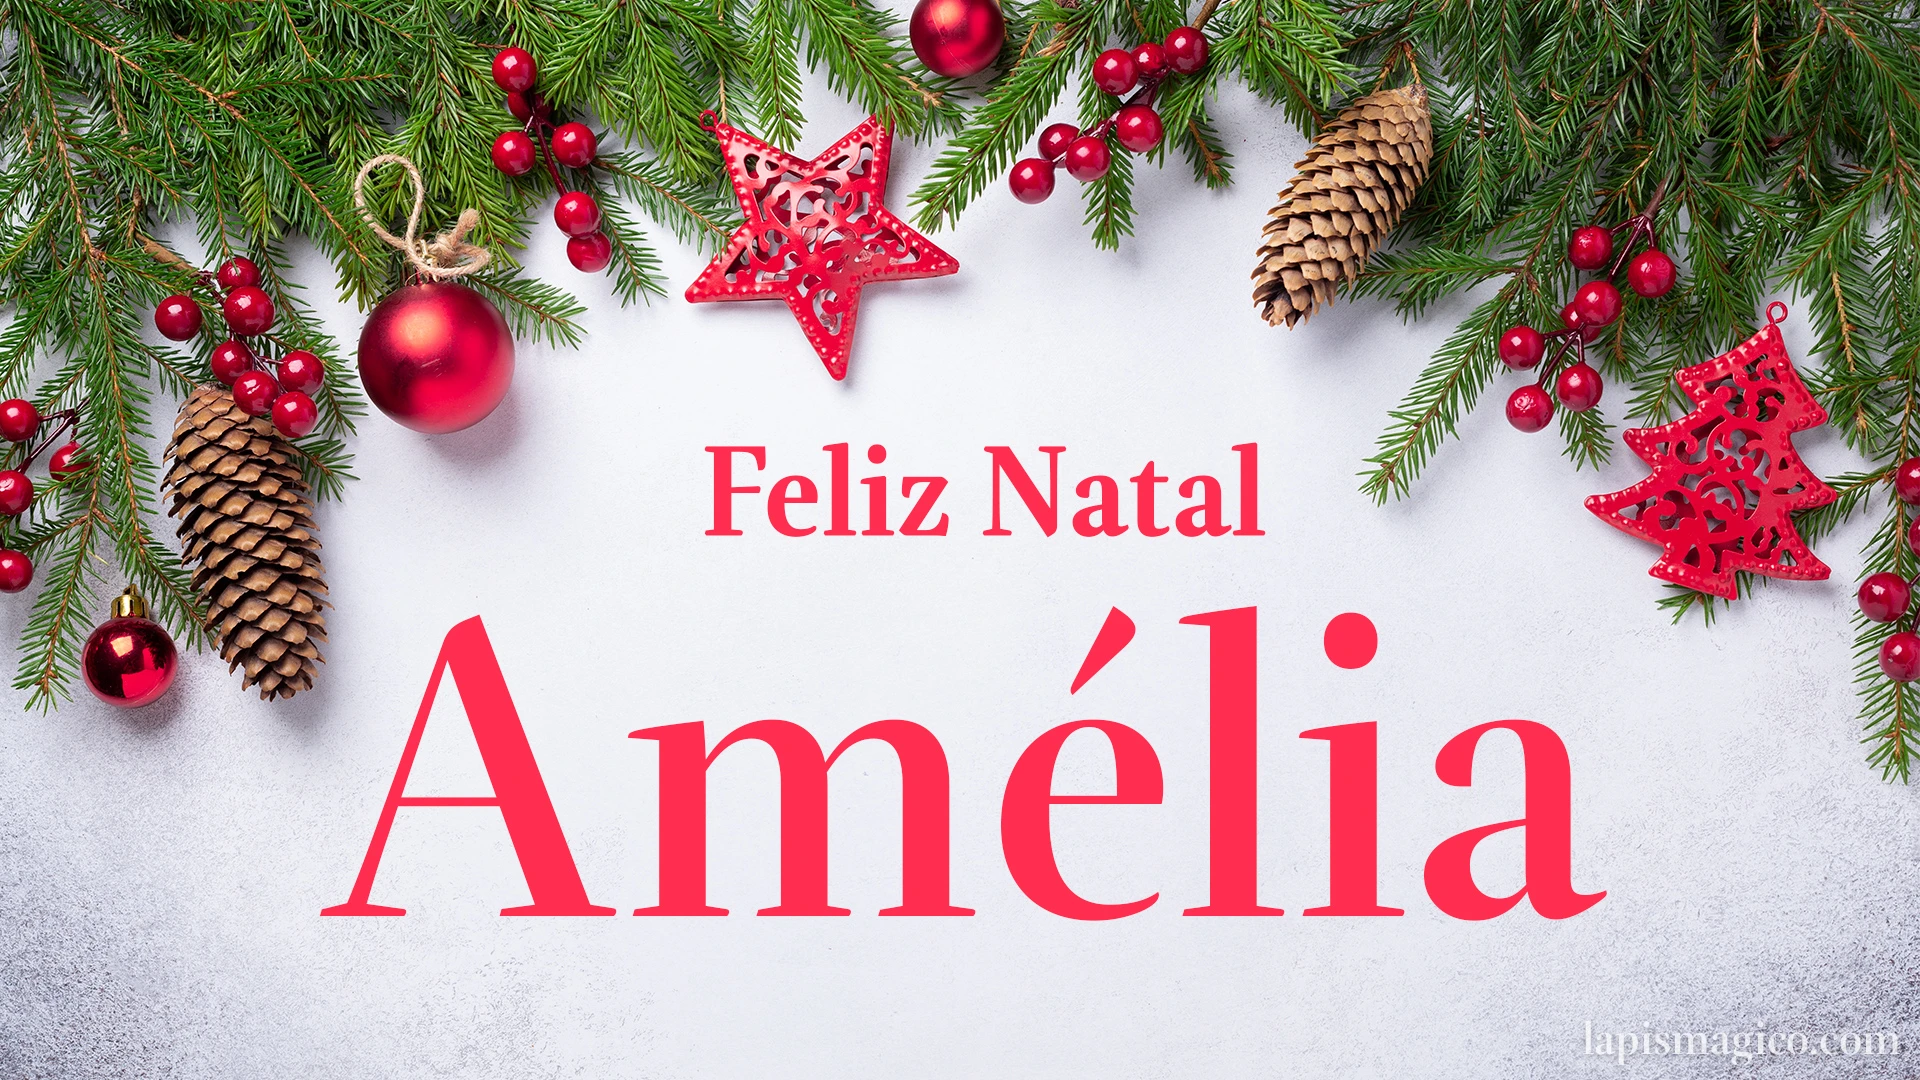 Oh Amélia, cinco postais de Feliz Natal Postal com o teu nome